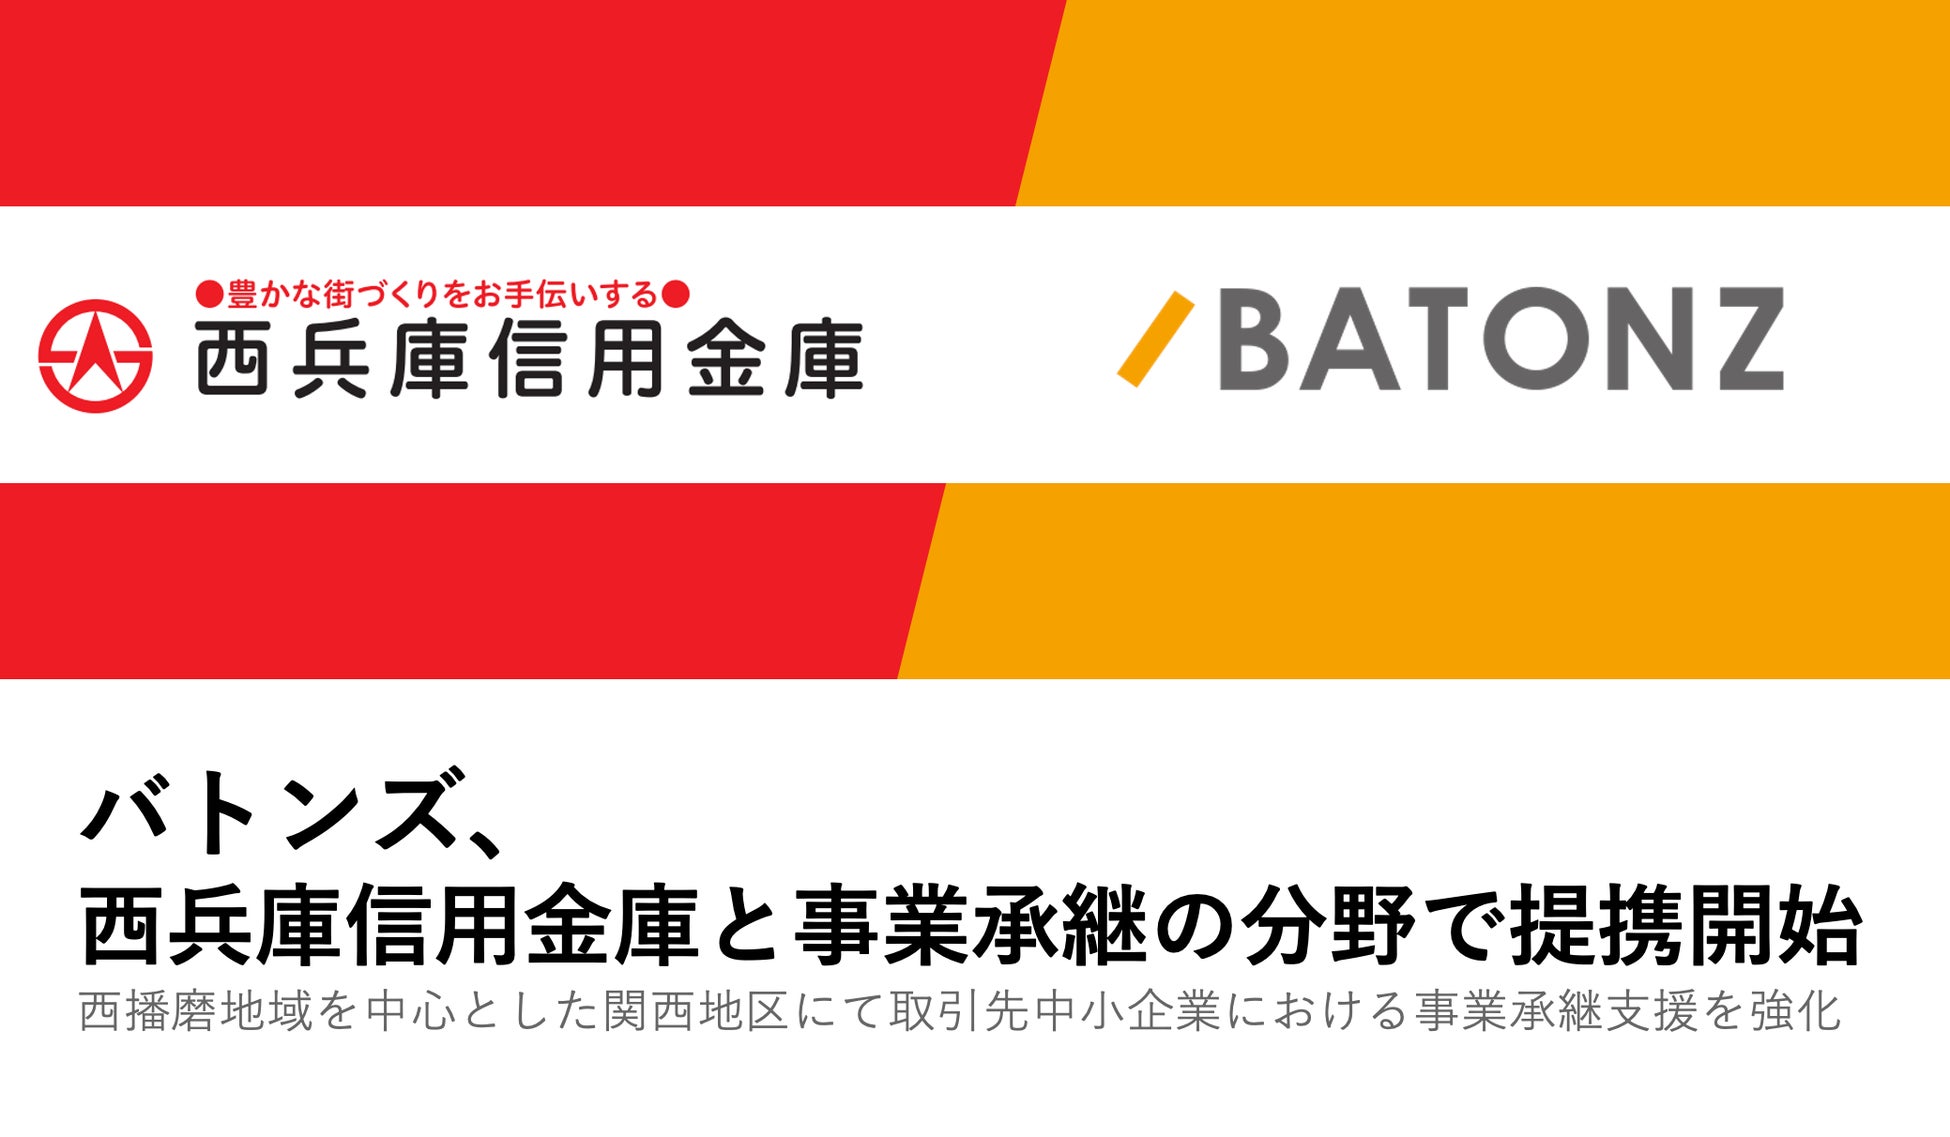 【9/21(木)】三菱UFJ信託銀行とFUNDINNOが、IPOに向けたバリュエーションアップのための知財戦略をテーマにセミナーを開催